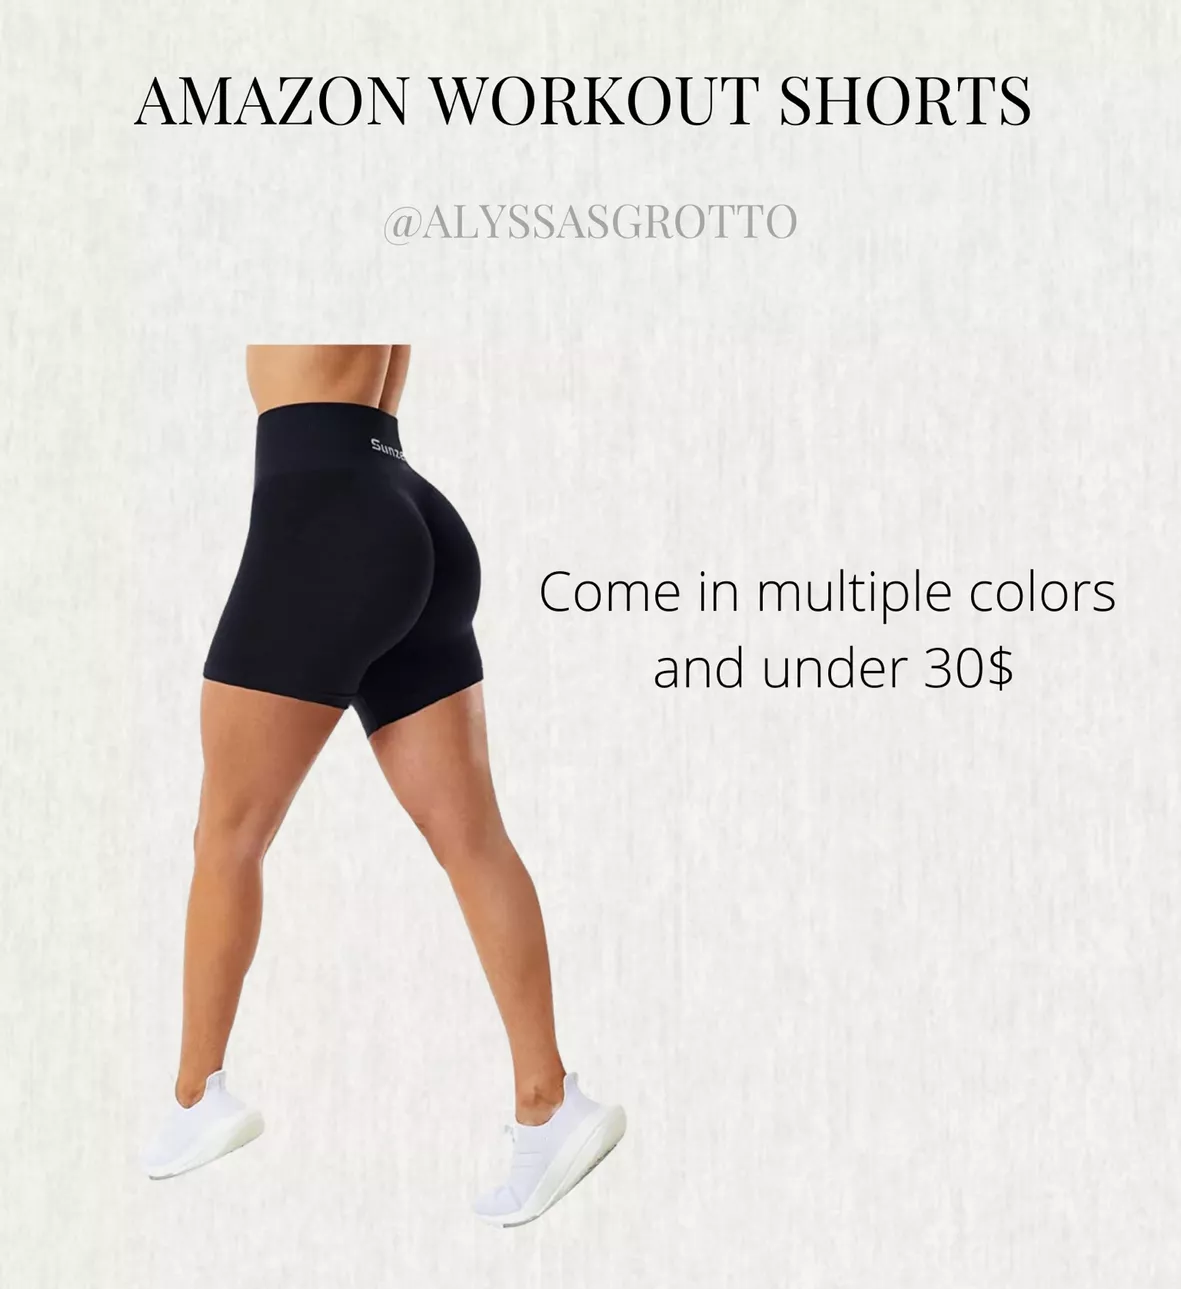 Sunzel Butt Scrunch Seamless Shorts, Womens 5 Inch Workout Shorts